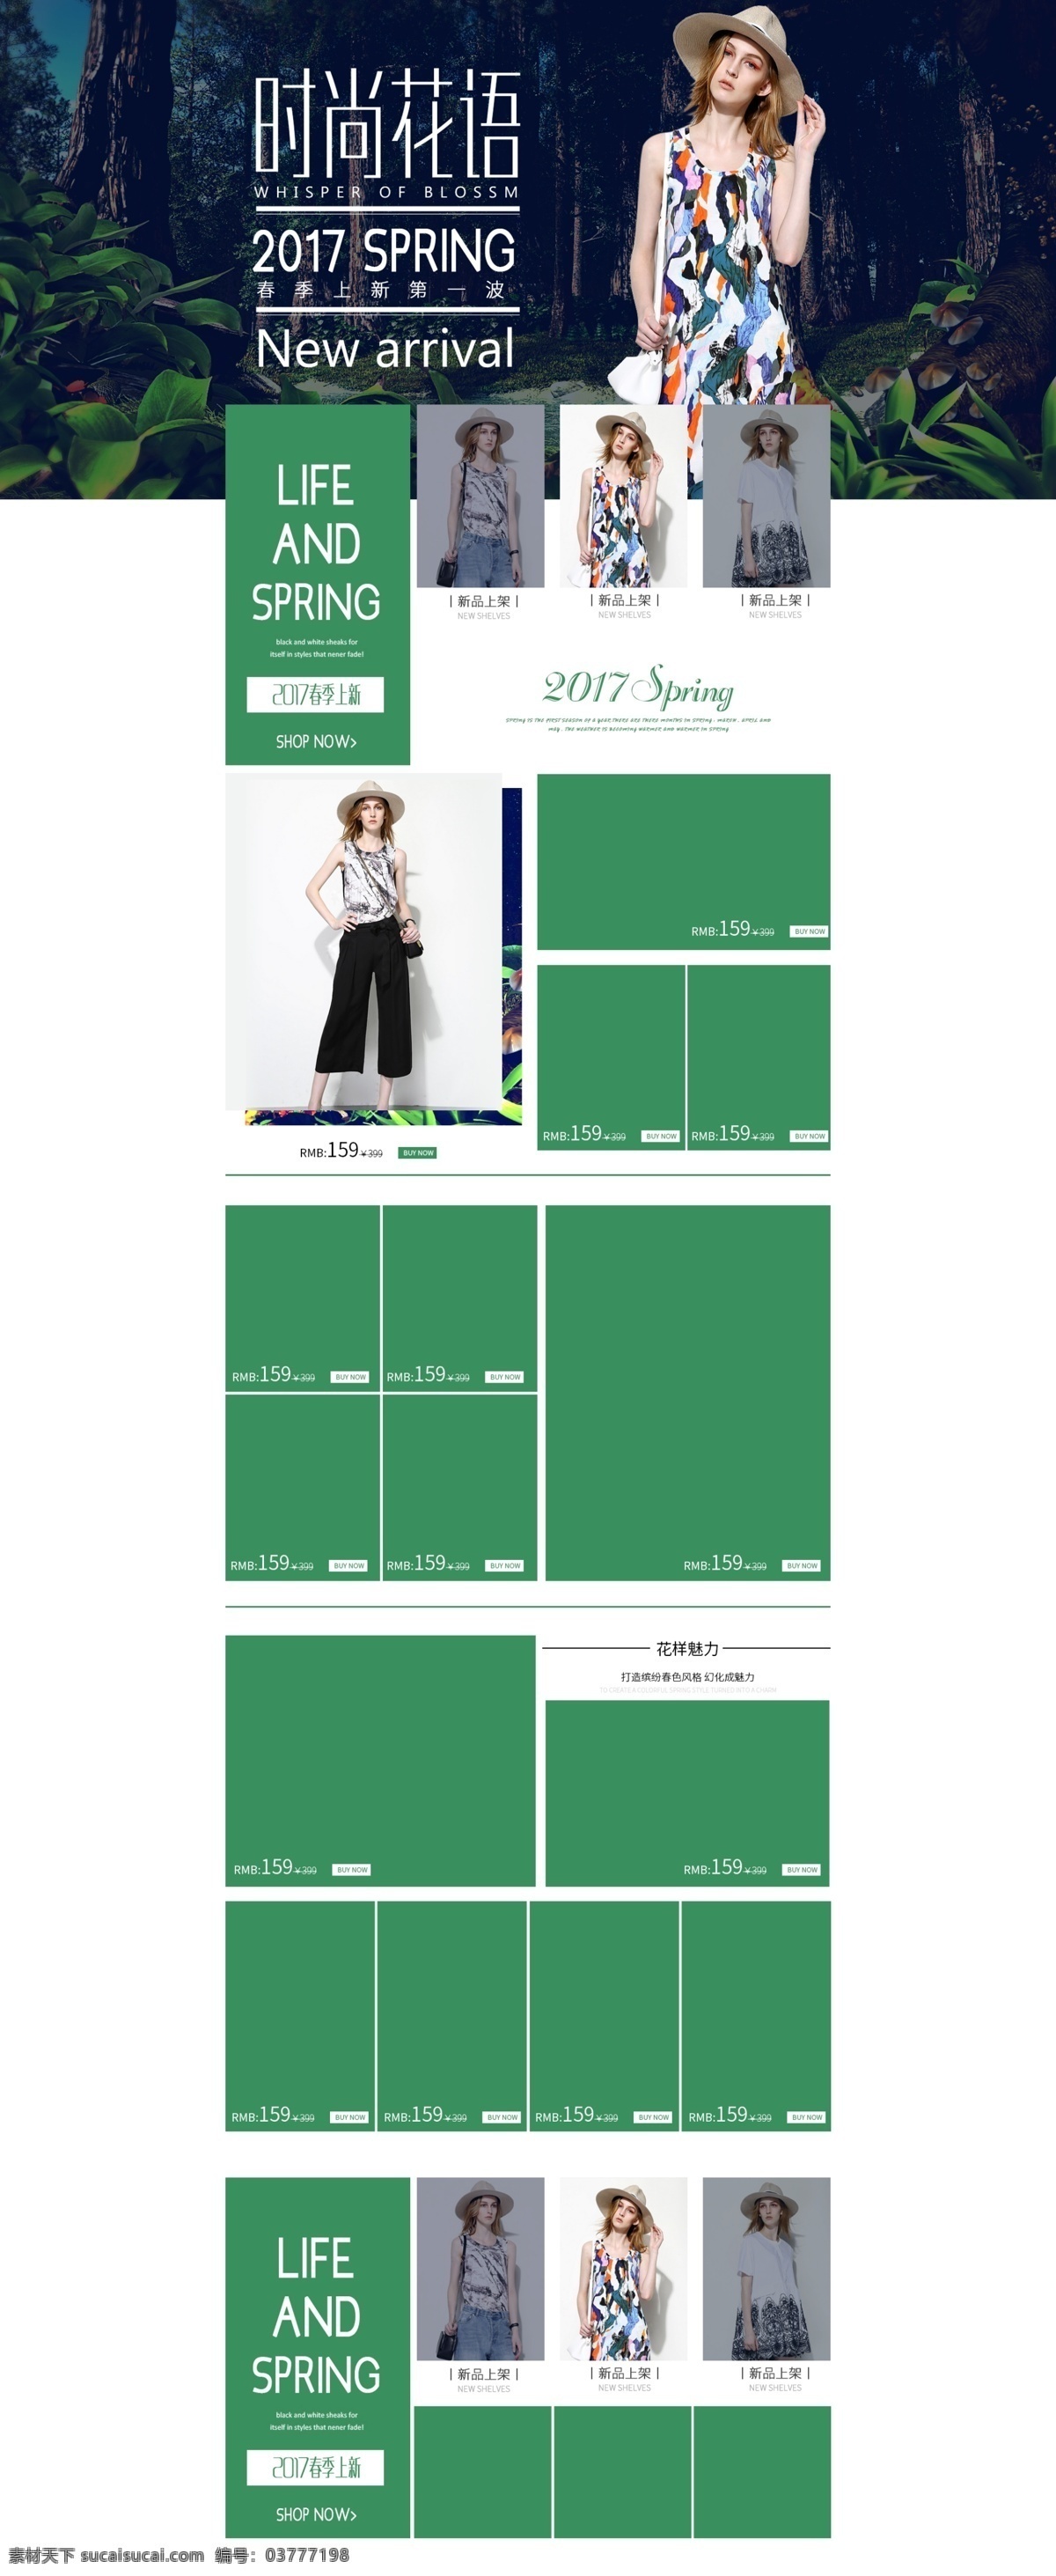 简约 小 清新 绿色 女装 夏季 首页 模板 模版 淘宝装修 装修 淘宝女装广告 淘宝 促销